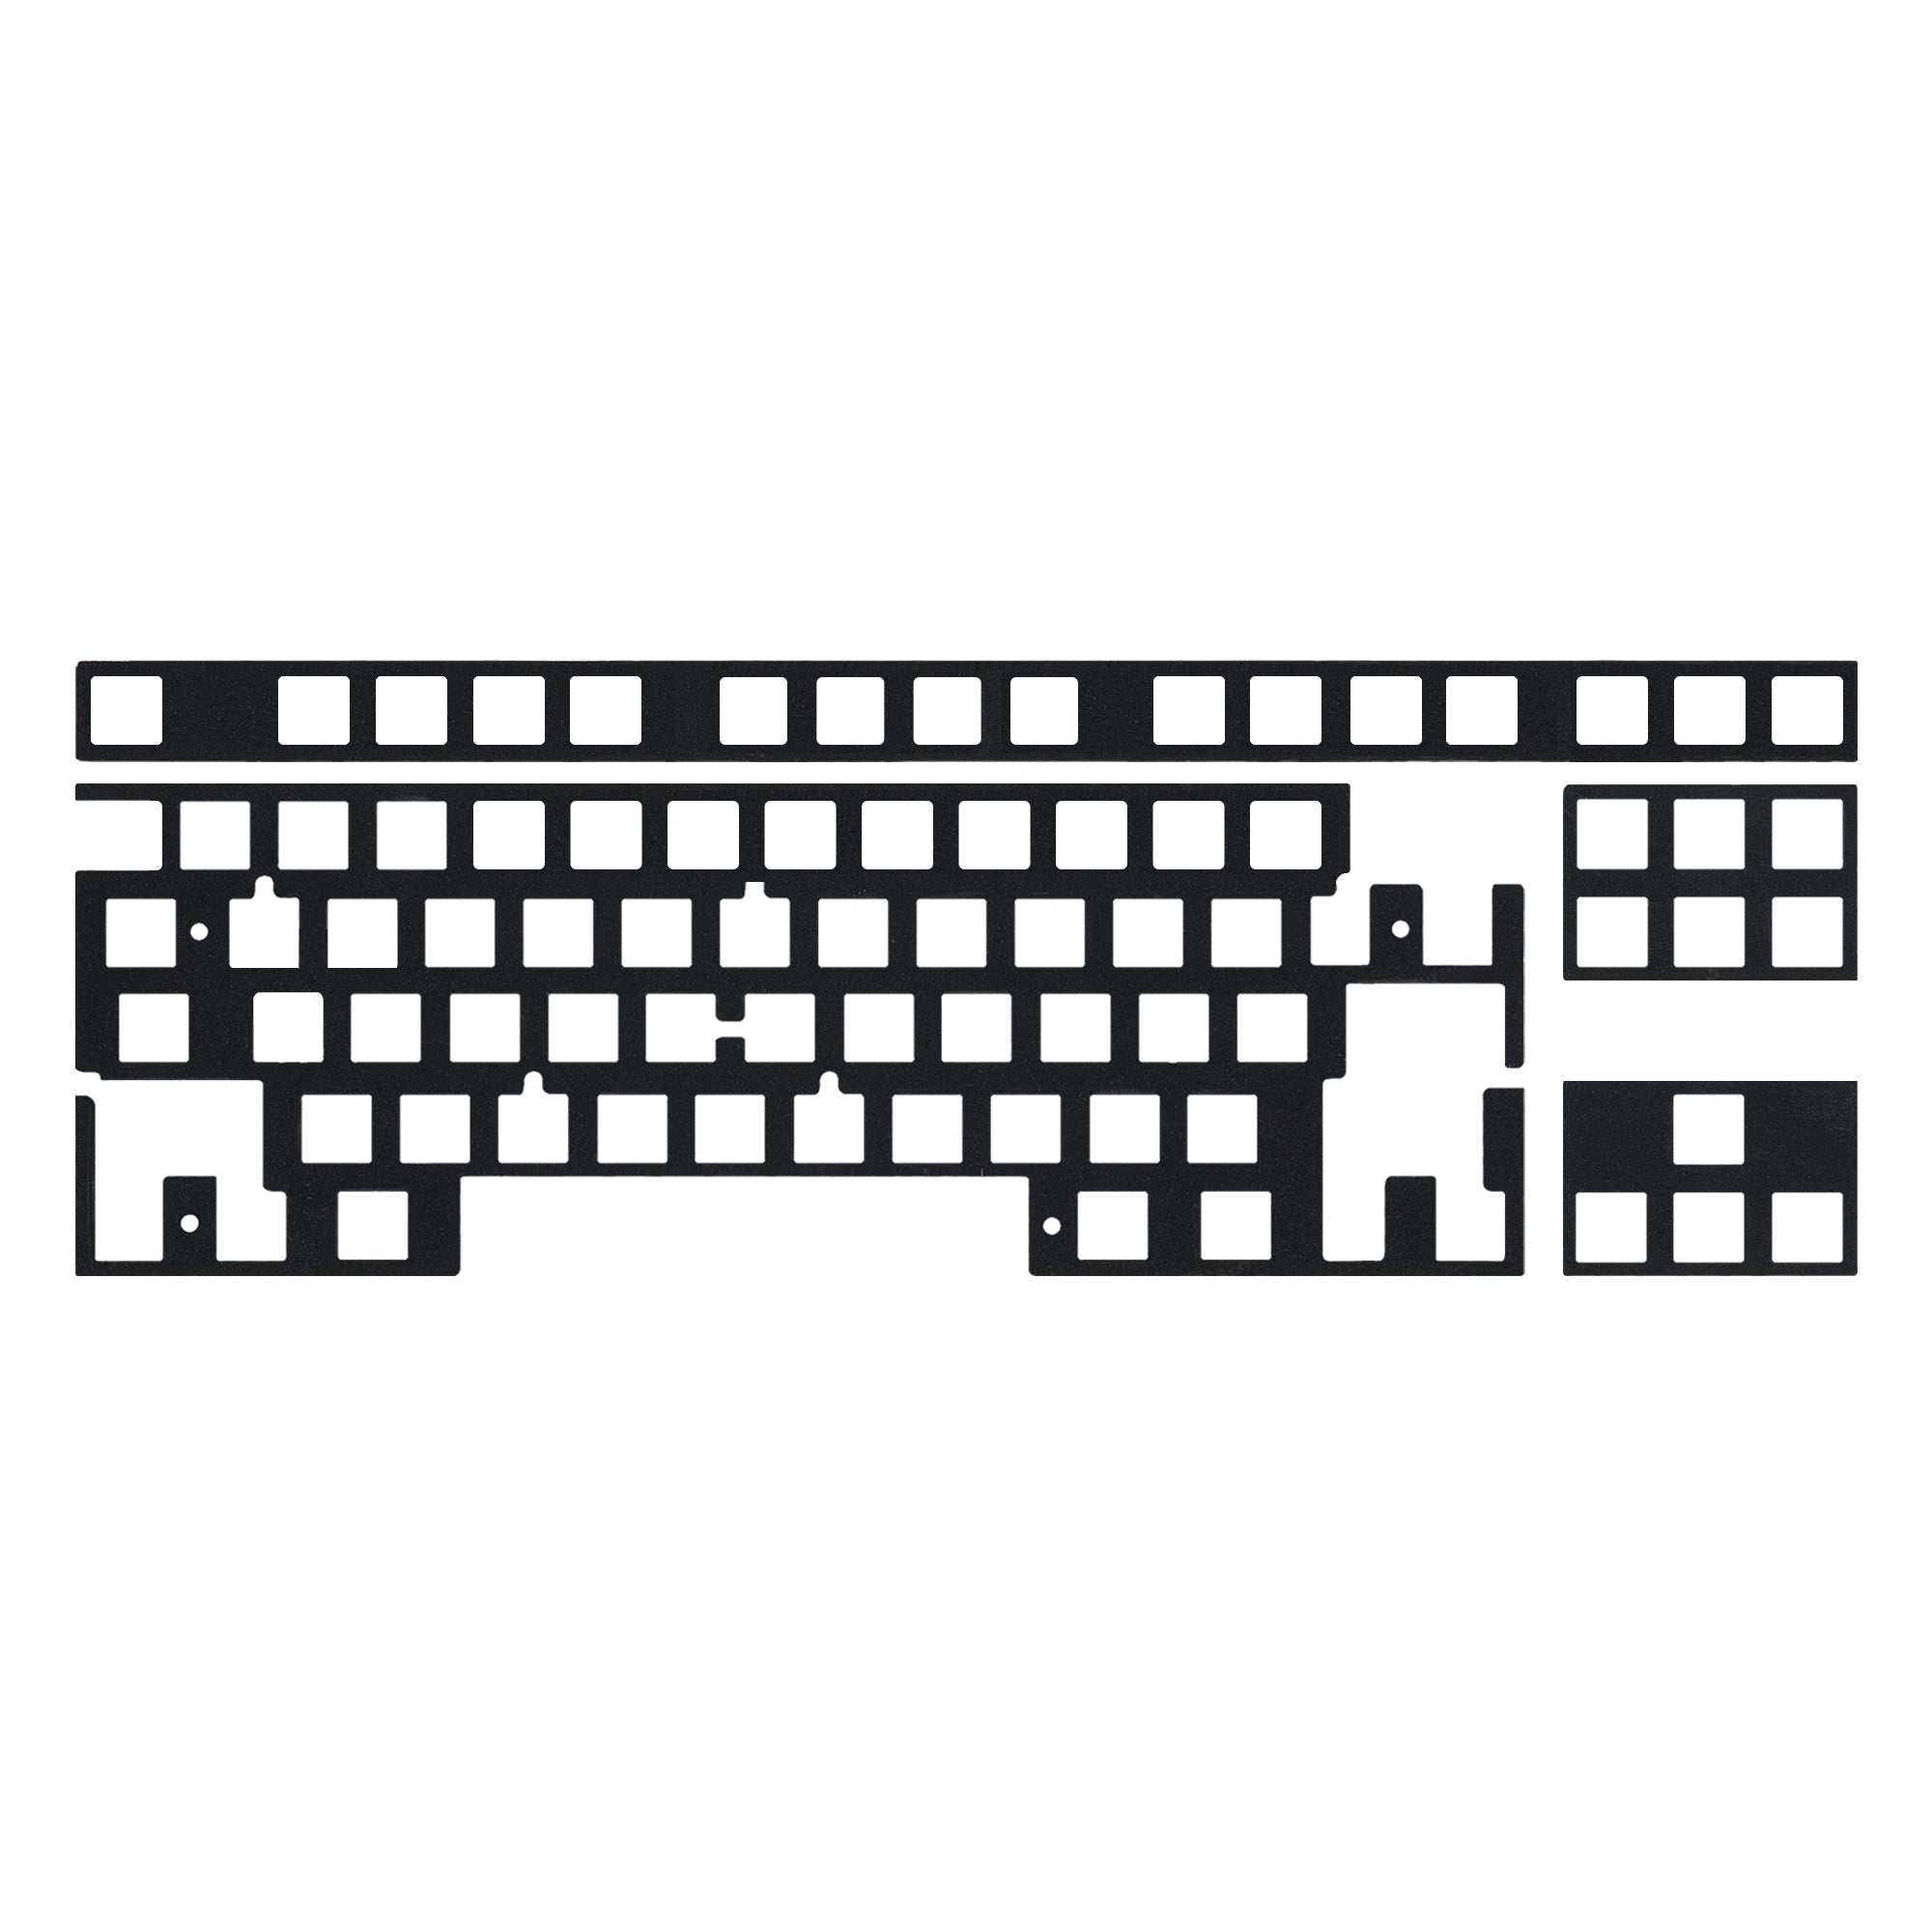 KBDfans Custom Keyboard 80% PCB Foams/Function Row/Navigation Arrow Foams